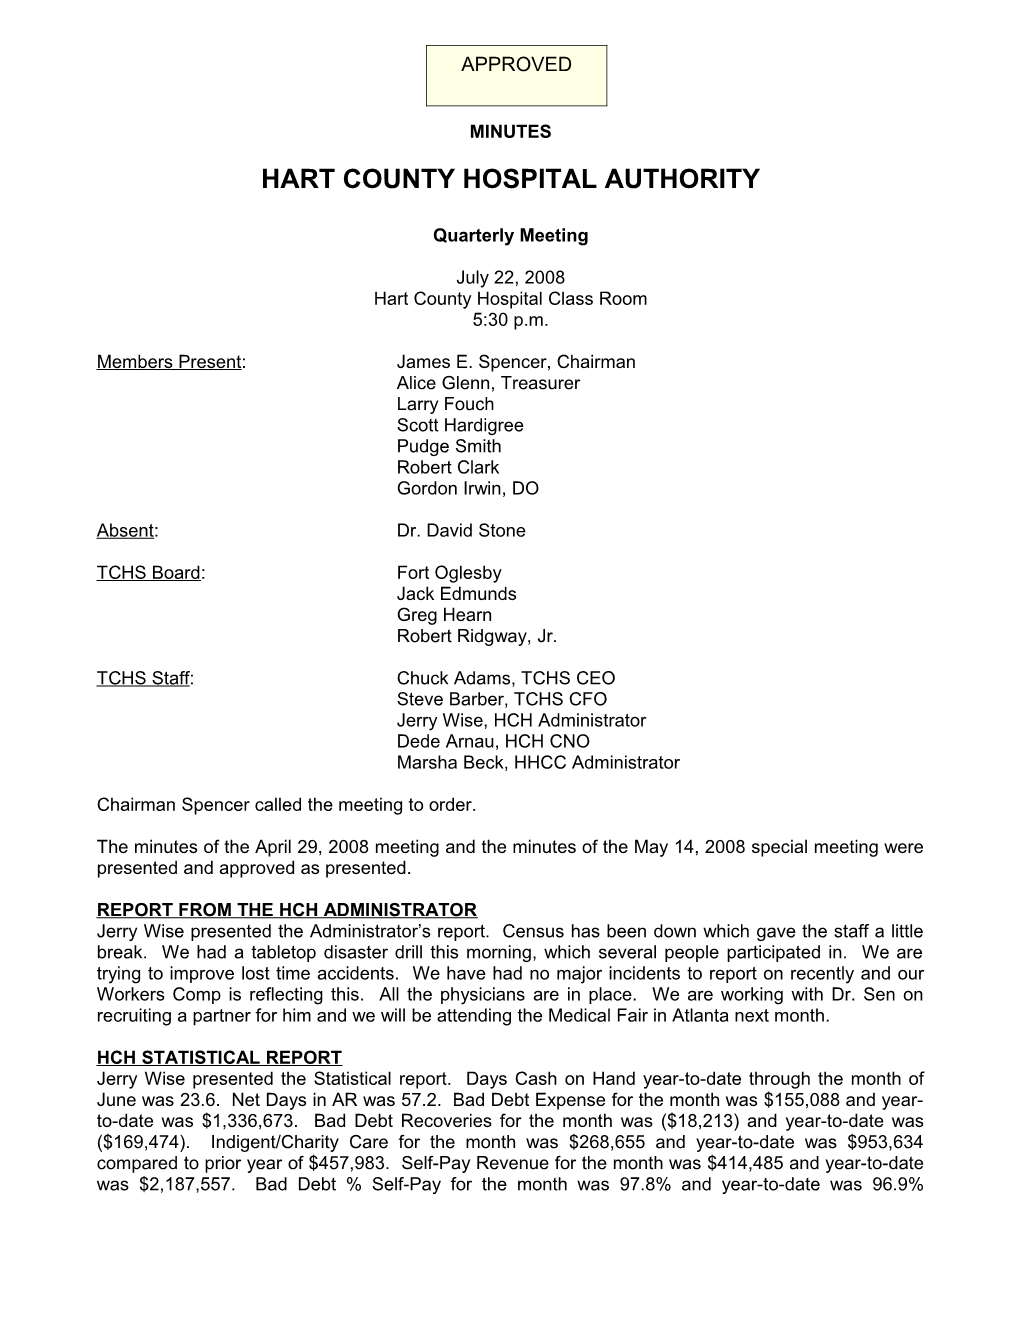 Hart County Hospital Authority